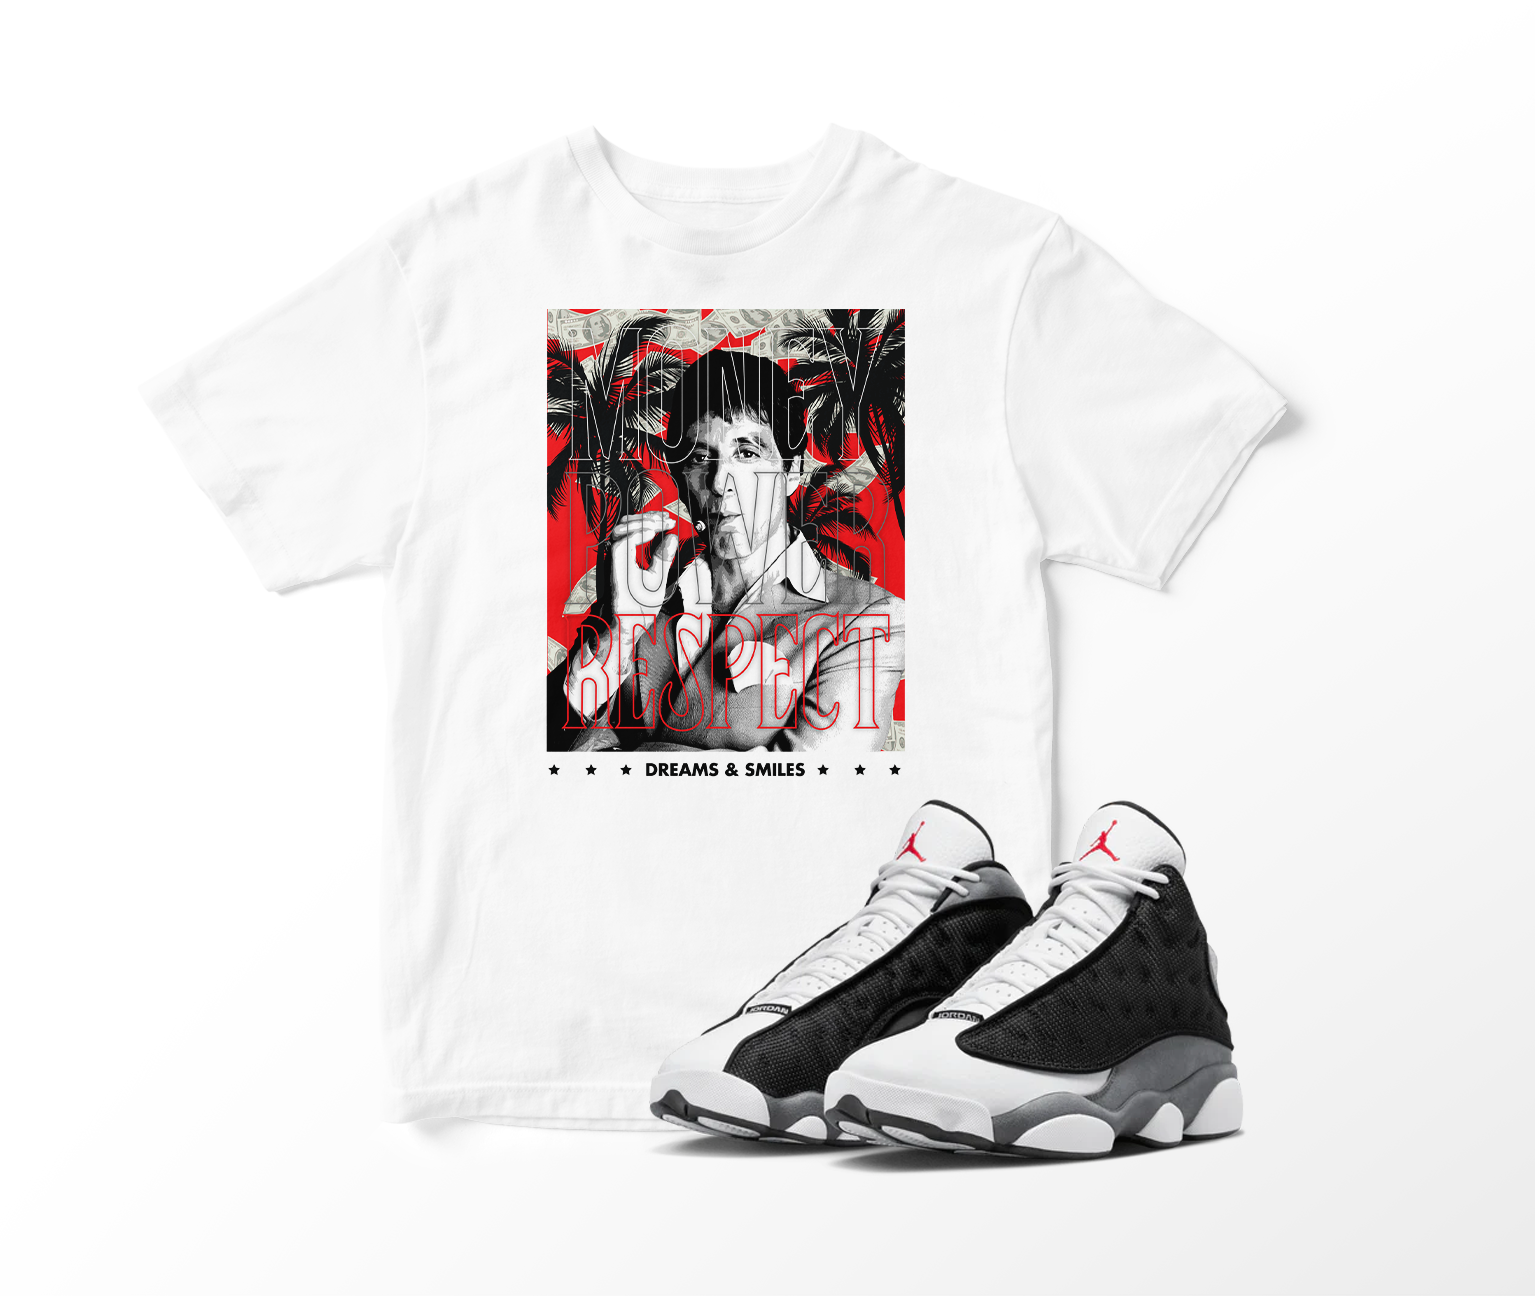 'Money, Power, Respect' Custom Graphic Short Sleeve T-Shirt To Match Air Jordan 13 Black Flint